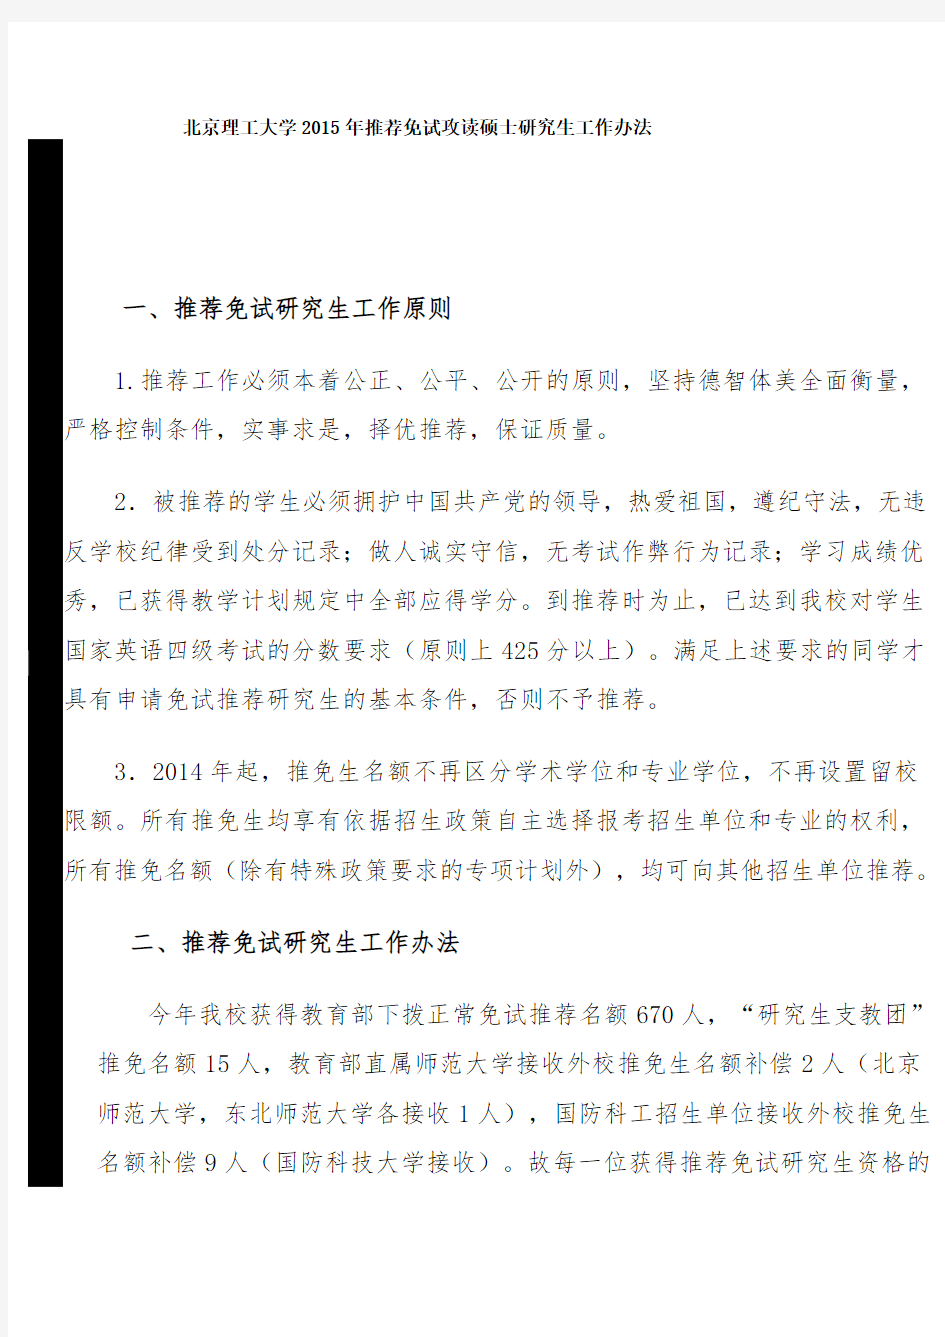 北京理工大学2015年推荐免试攻读硕士研究生工作办法